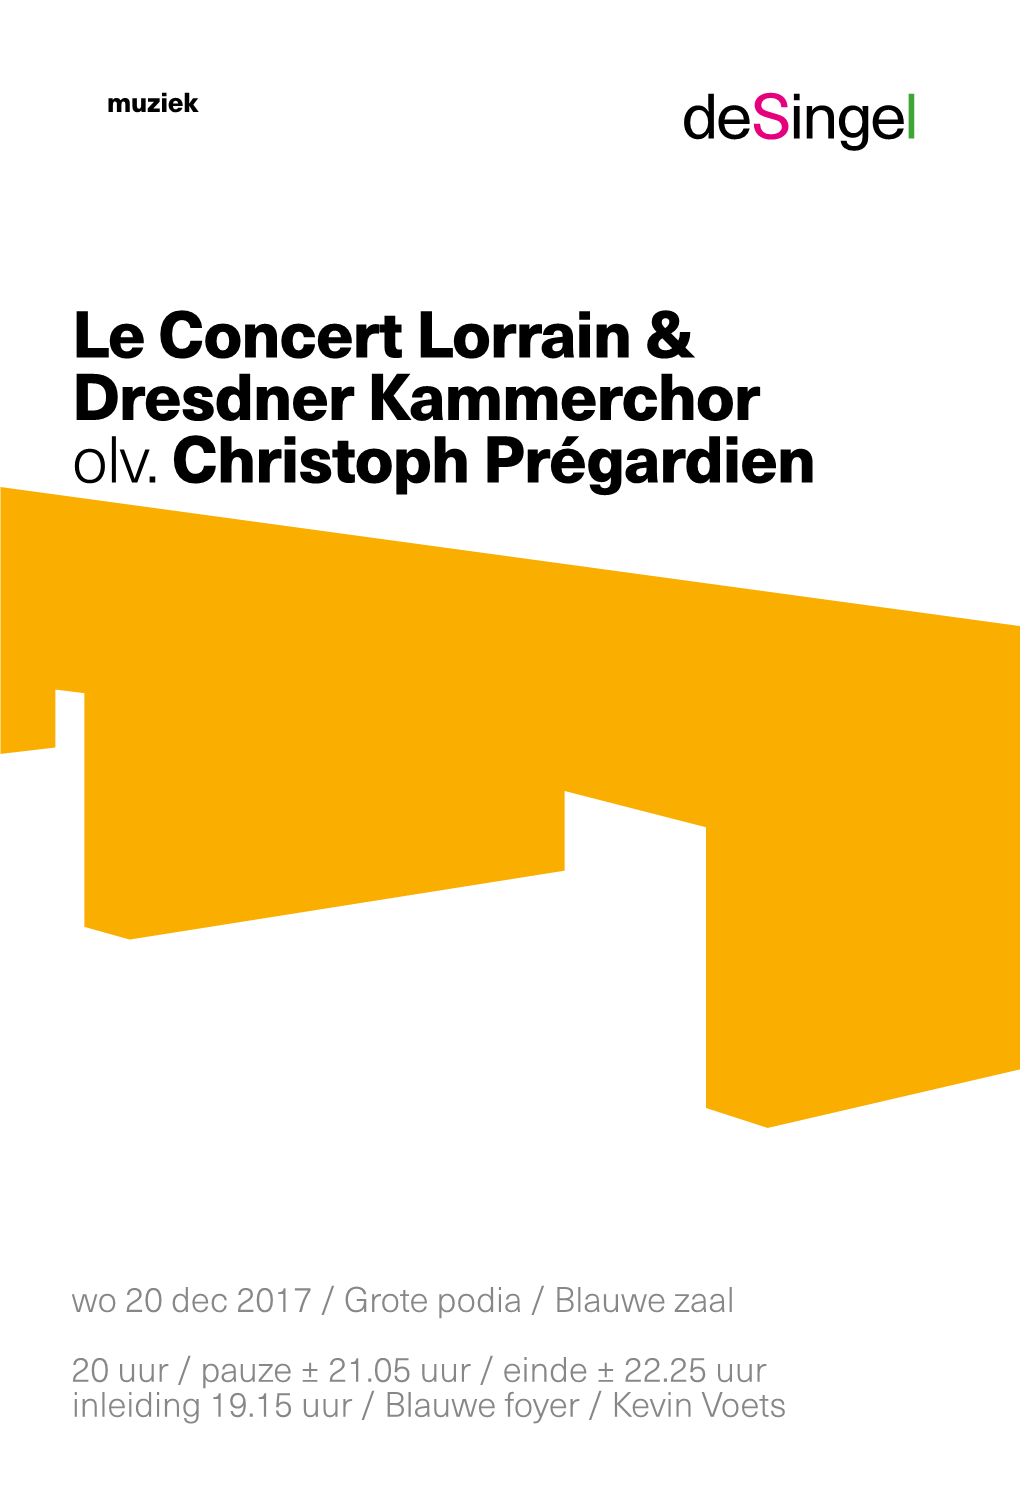 Le Concert Lorrain & Dresdner Kammerchor Olv. Christoph